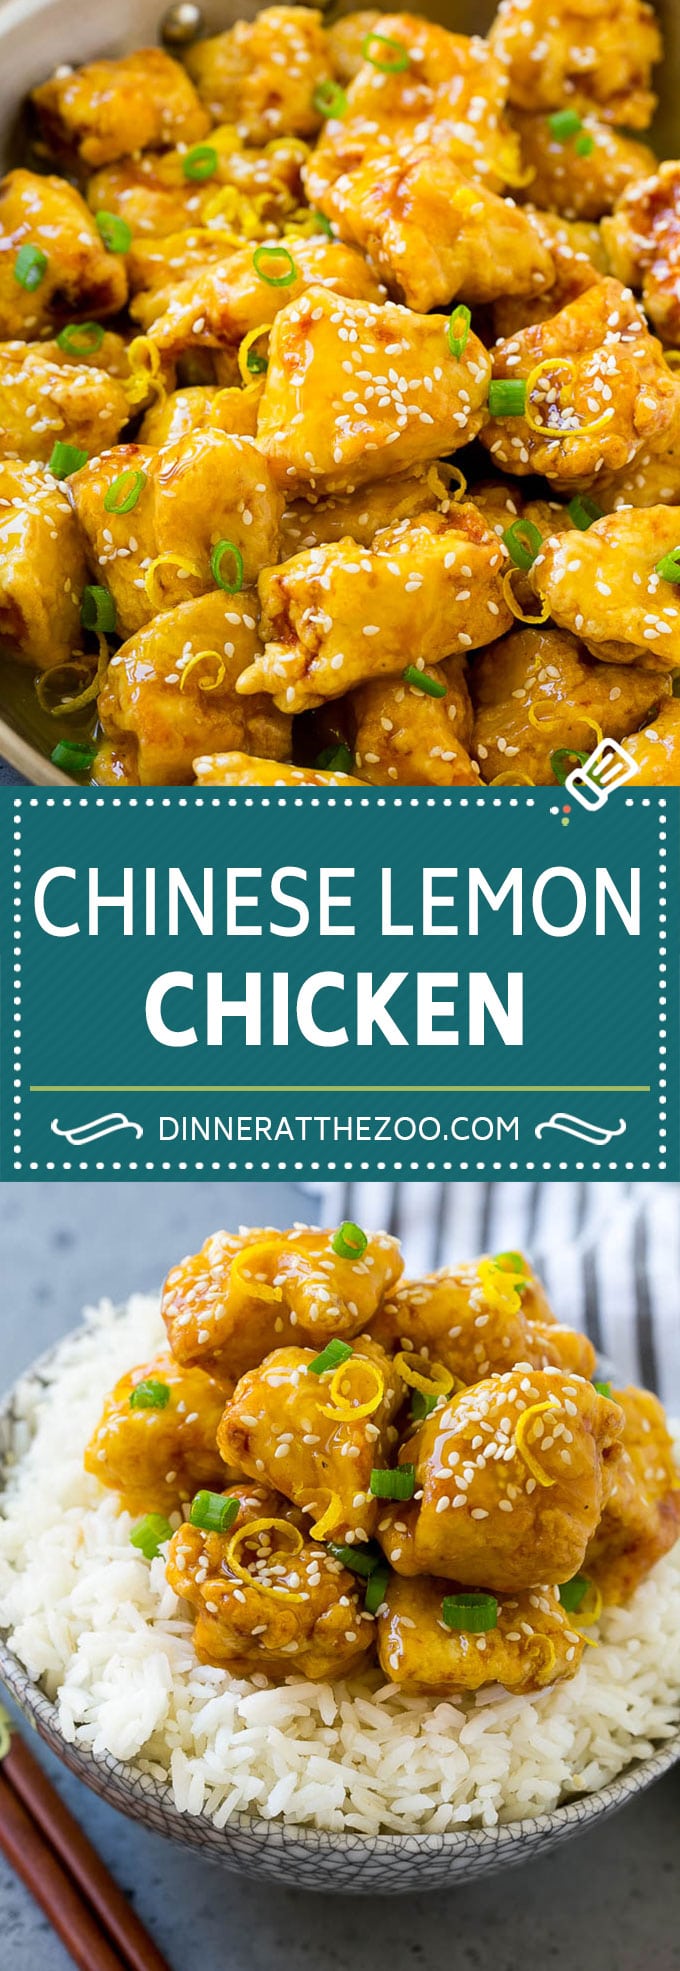 Receta de pollo al limón chino |  Pollo crujiente al limón |  Receta de comida china # limón # pollo # comida china # cena # dinneratthezoo